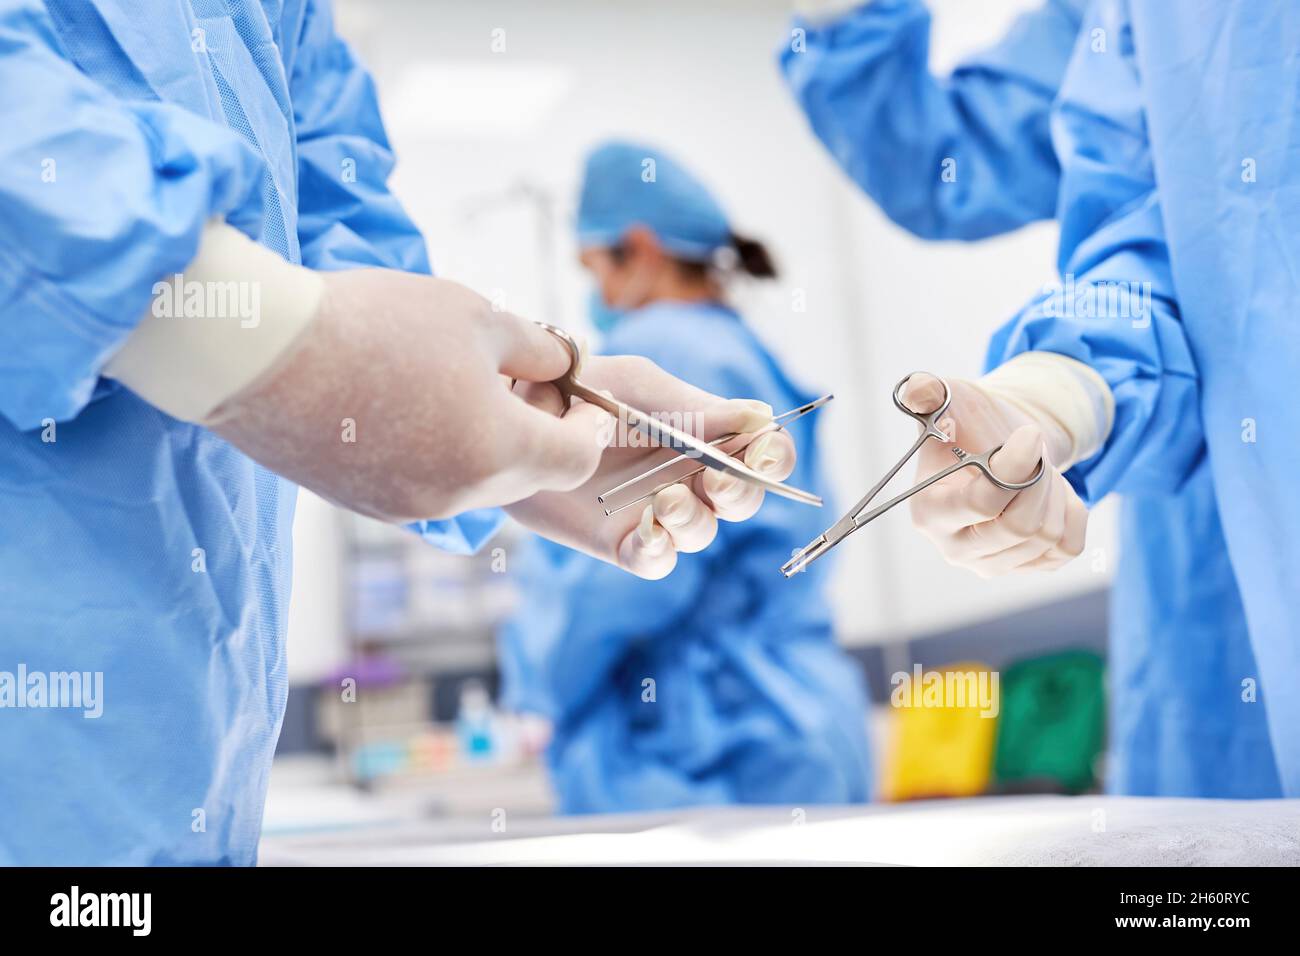 Equipo médico en cirugía con instrumentos quirúrgicos estériles preparándose para una operación Foto de stock